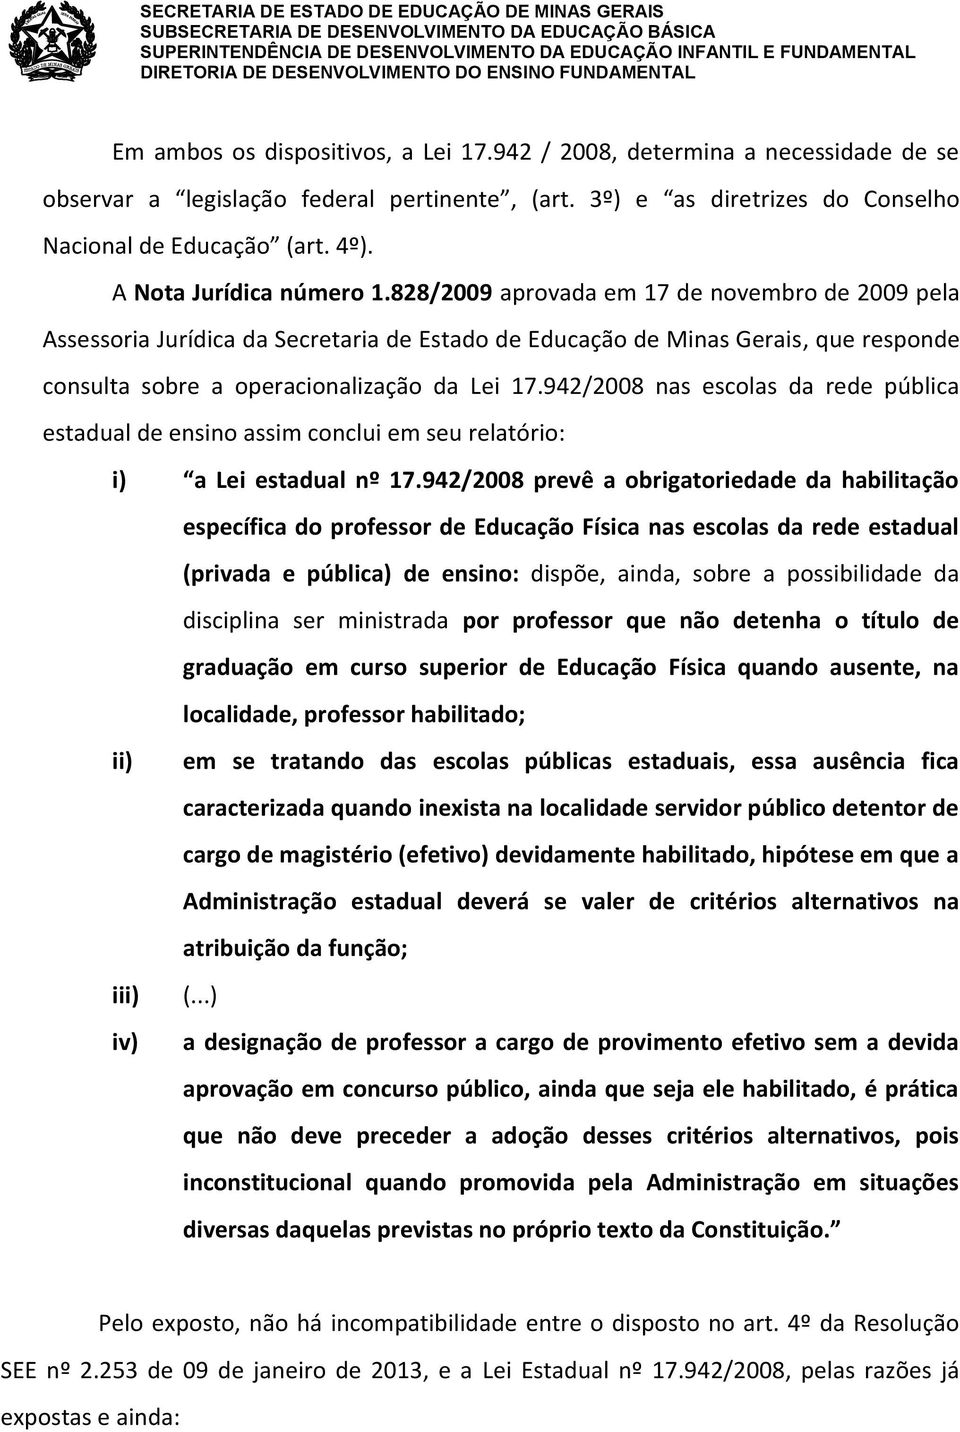 828/2009 aprovada em 17 de novembro de 2009 pela Assessoria Jurídica da Secretaria de Estado de Educação de Minas Gerais, que responde consulta sobre a operacionalização da Lei 17.